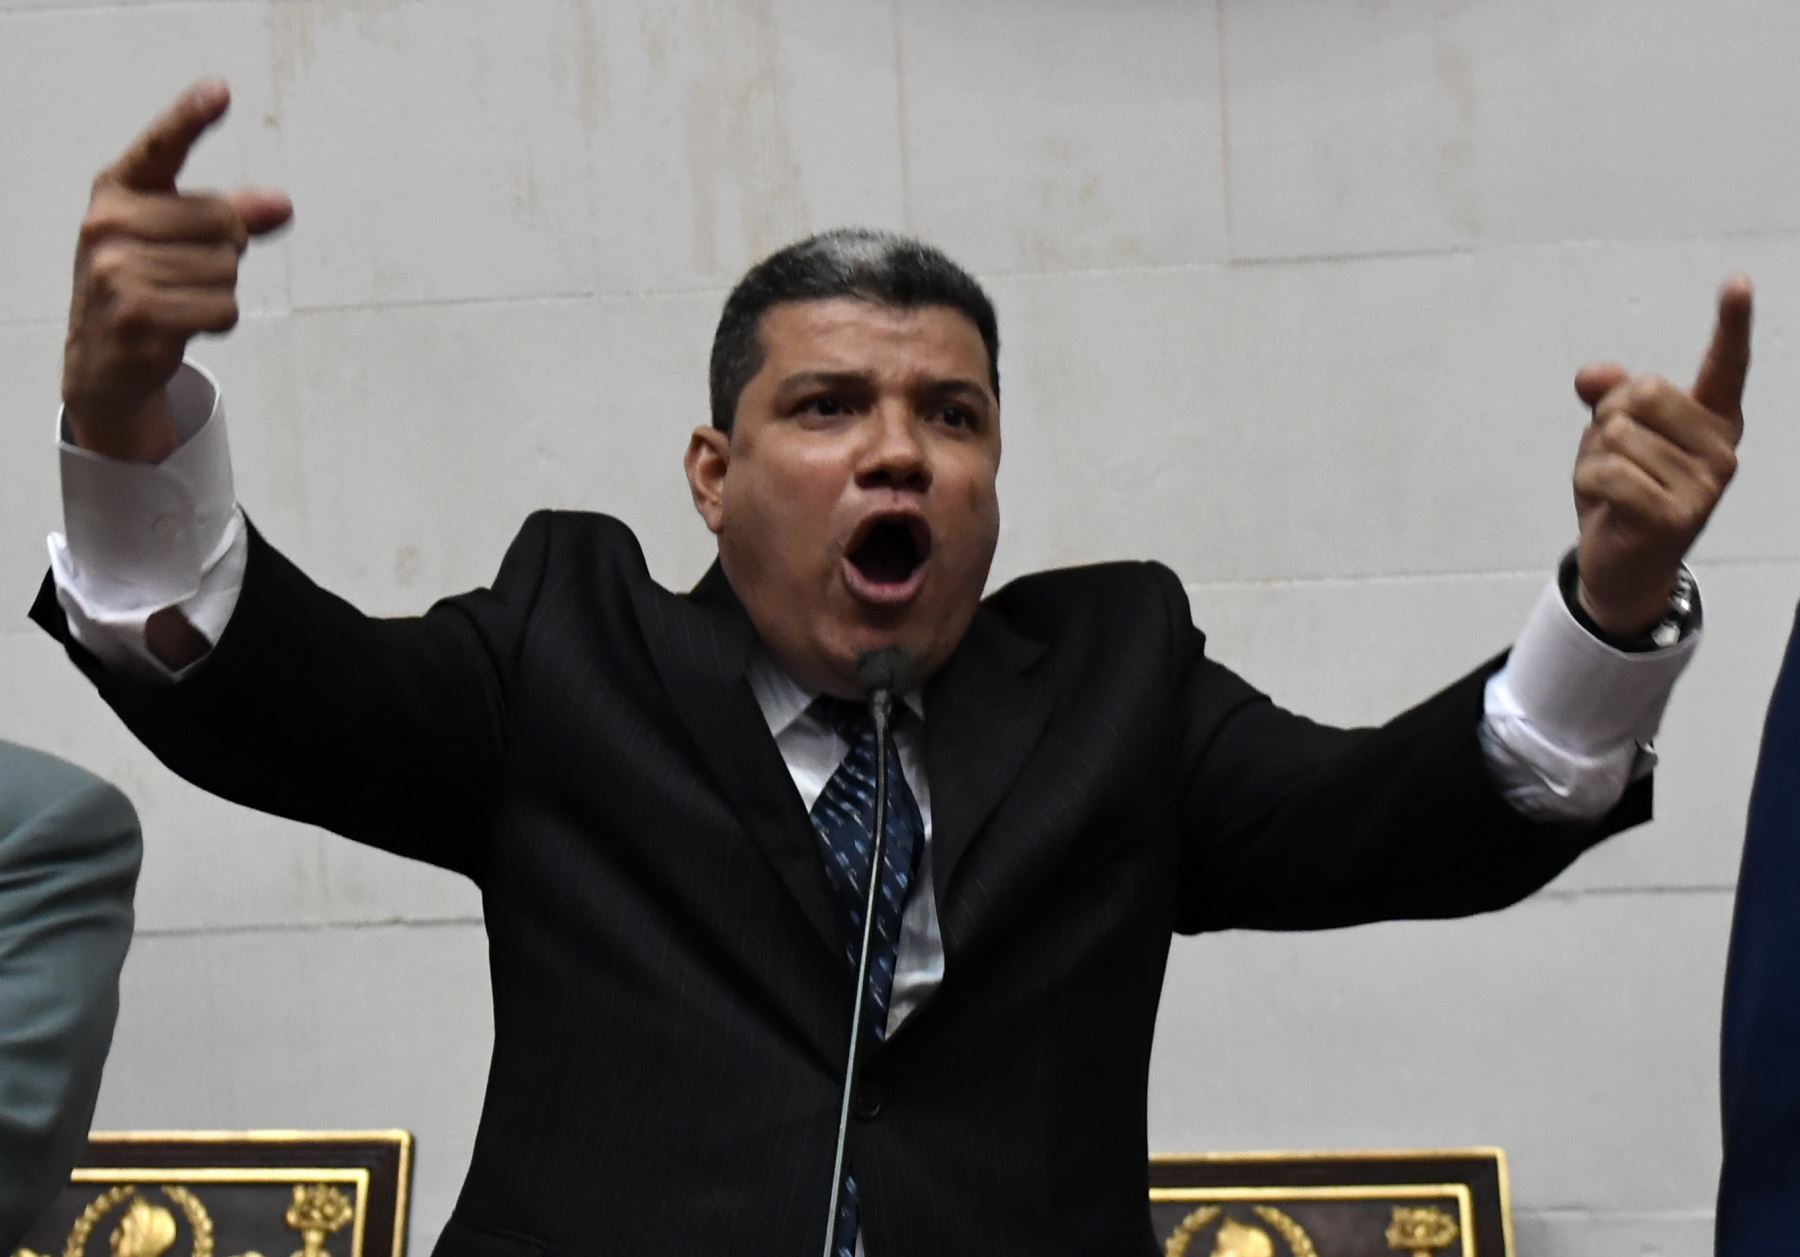 El legislador de la oposición venezolana, Luis Parra, pronuncia un discurso después de jurar como parlamentario en la Asamblea Nacional en Caracas.
Foto: AFP